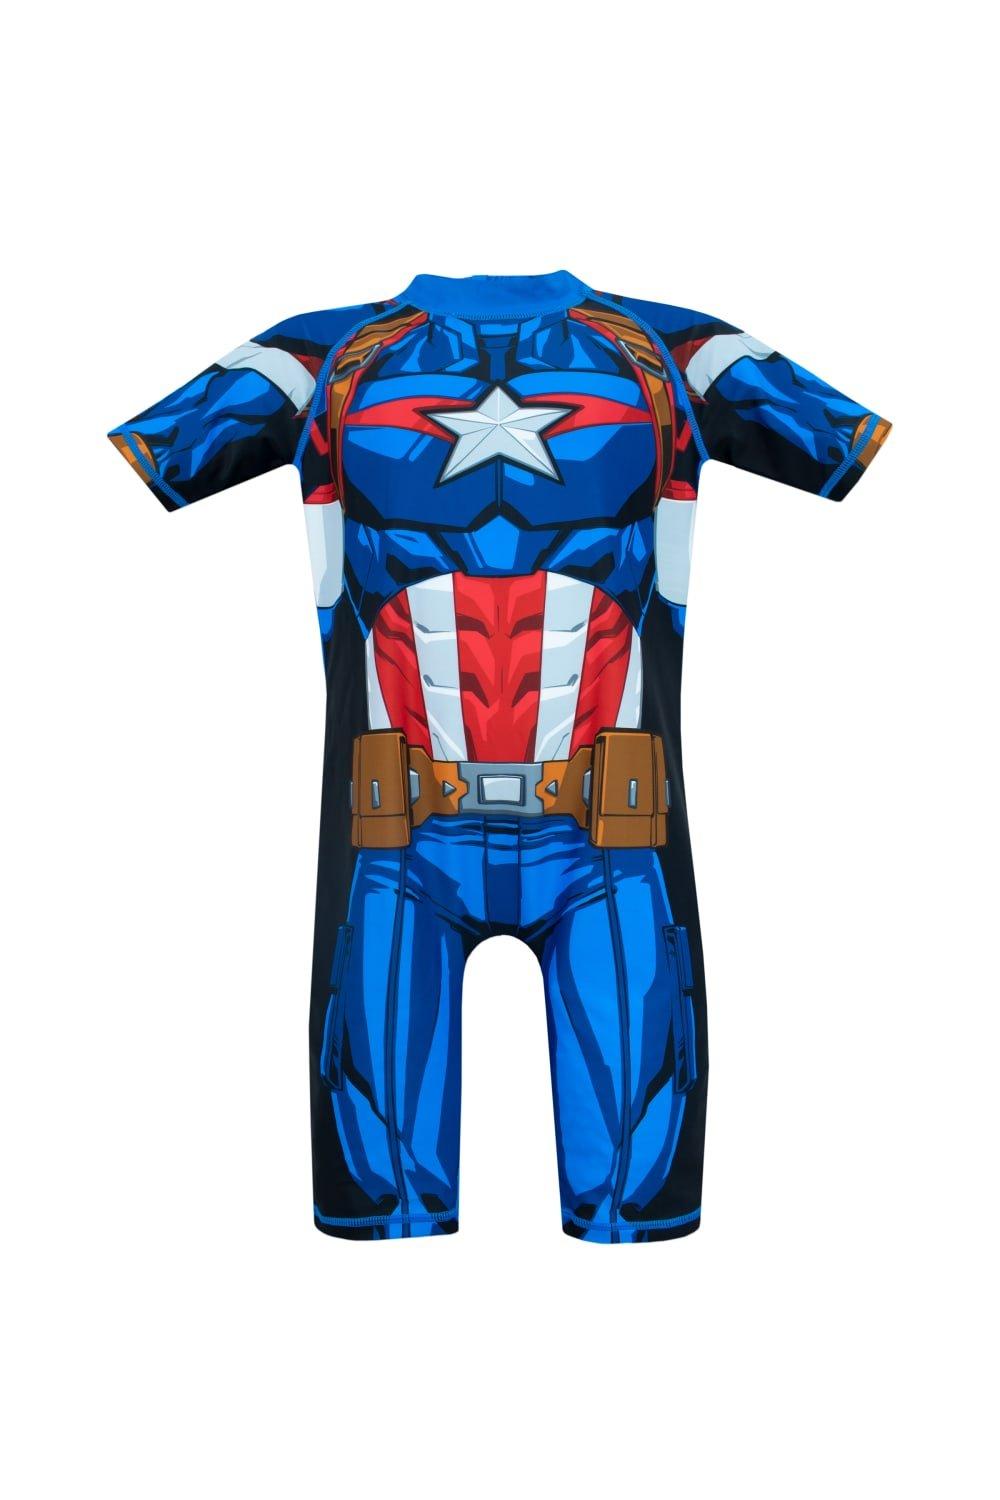 Captain America Avengers Swimsuit